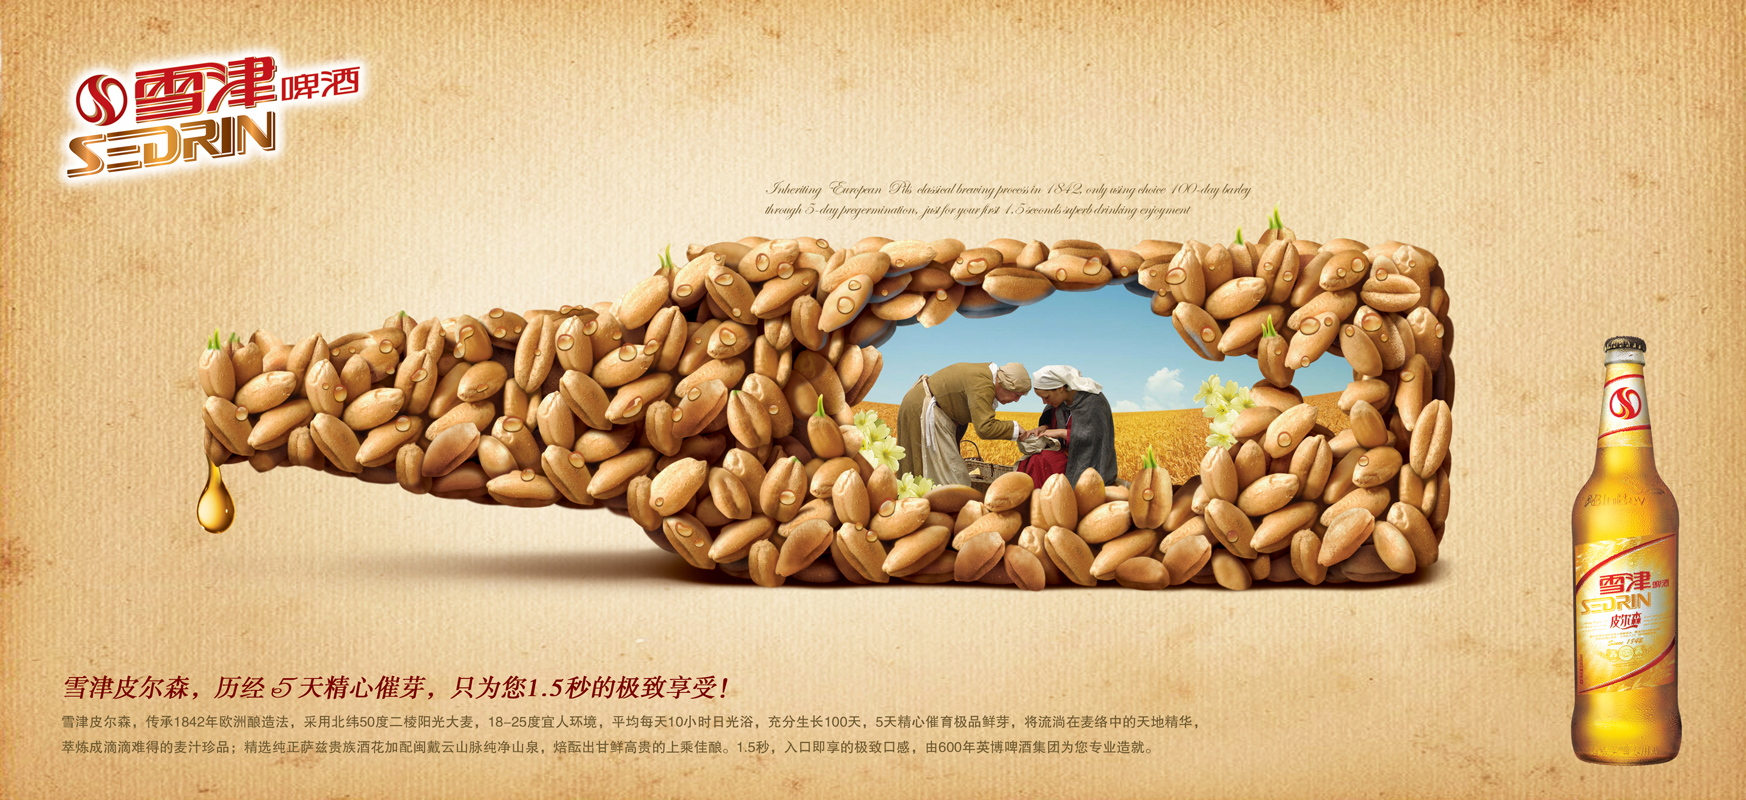 广告海报-雪津啤酒广告海报设计欣赏